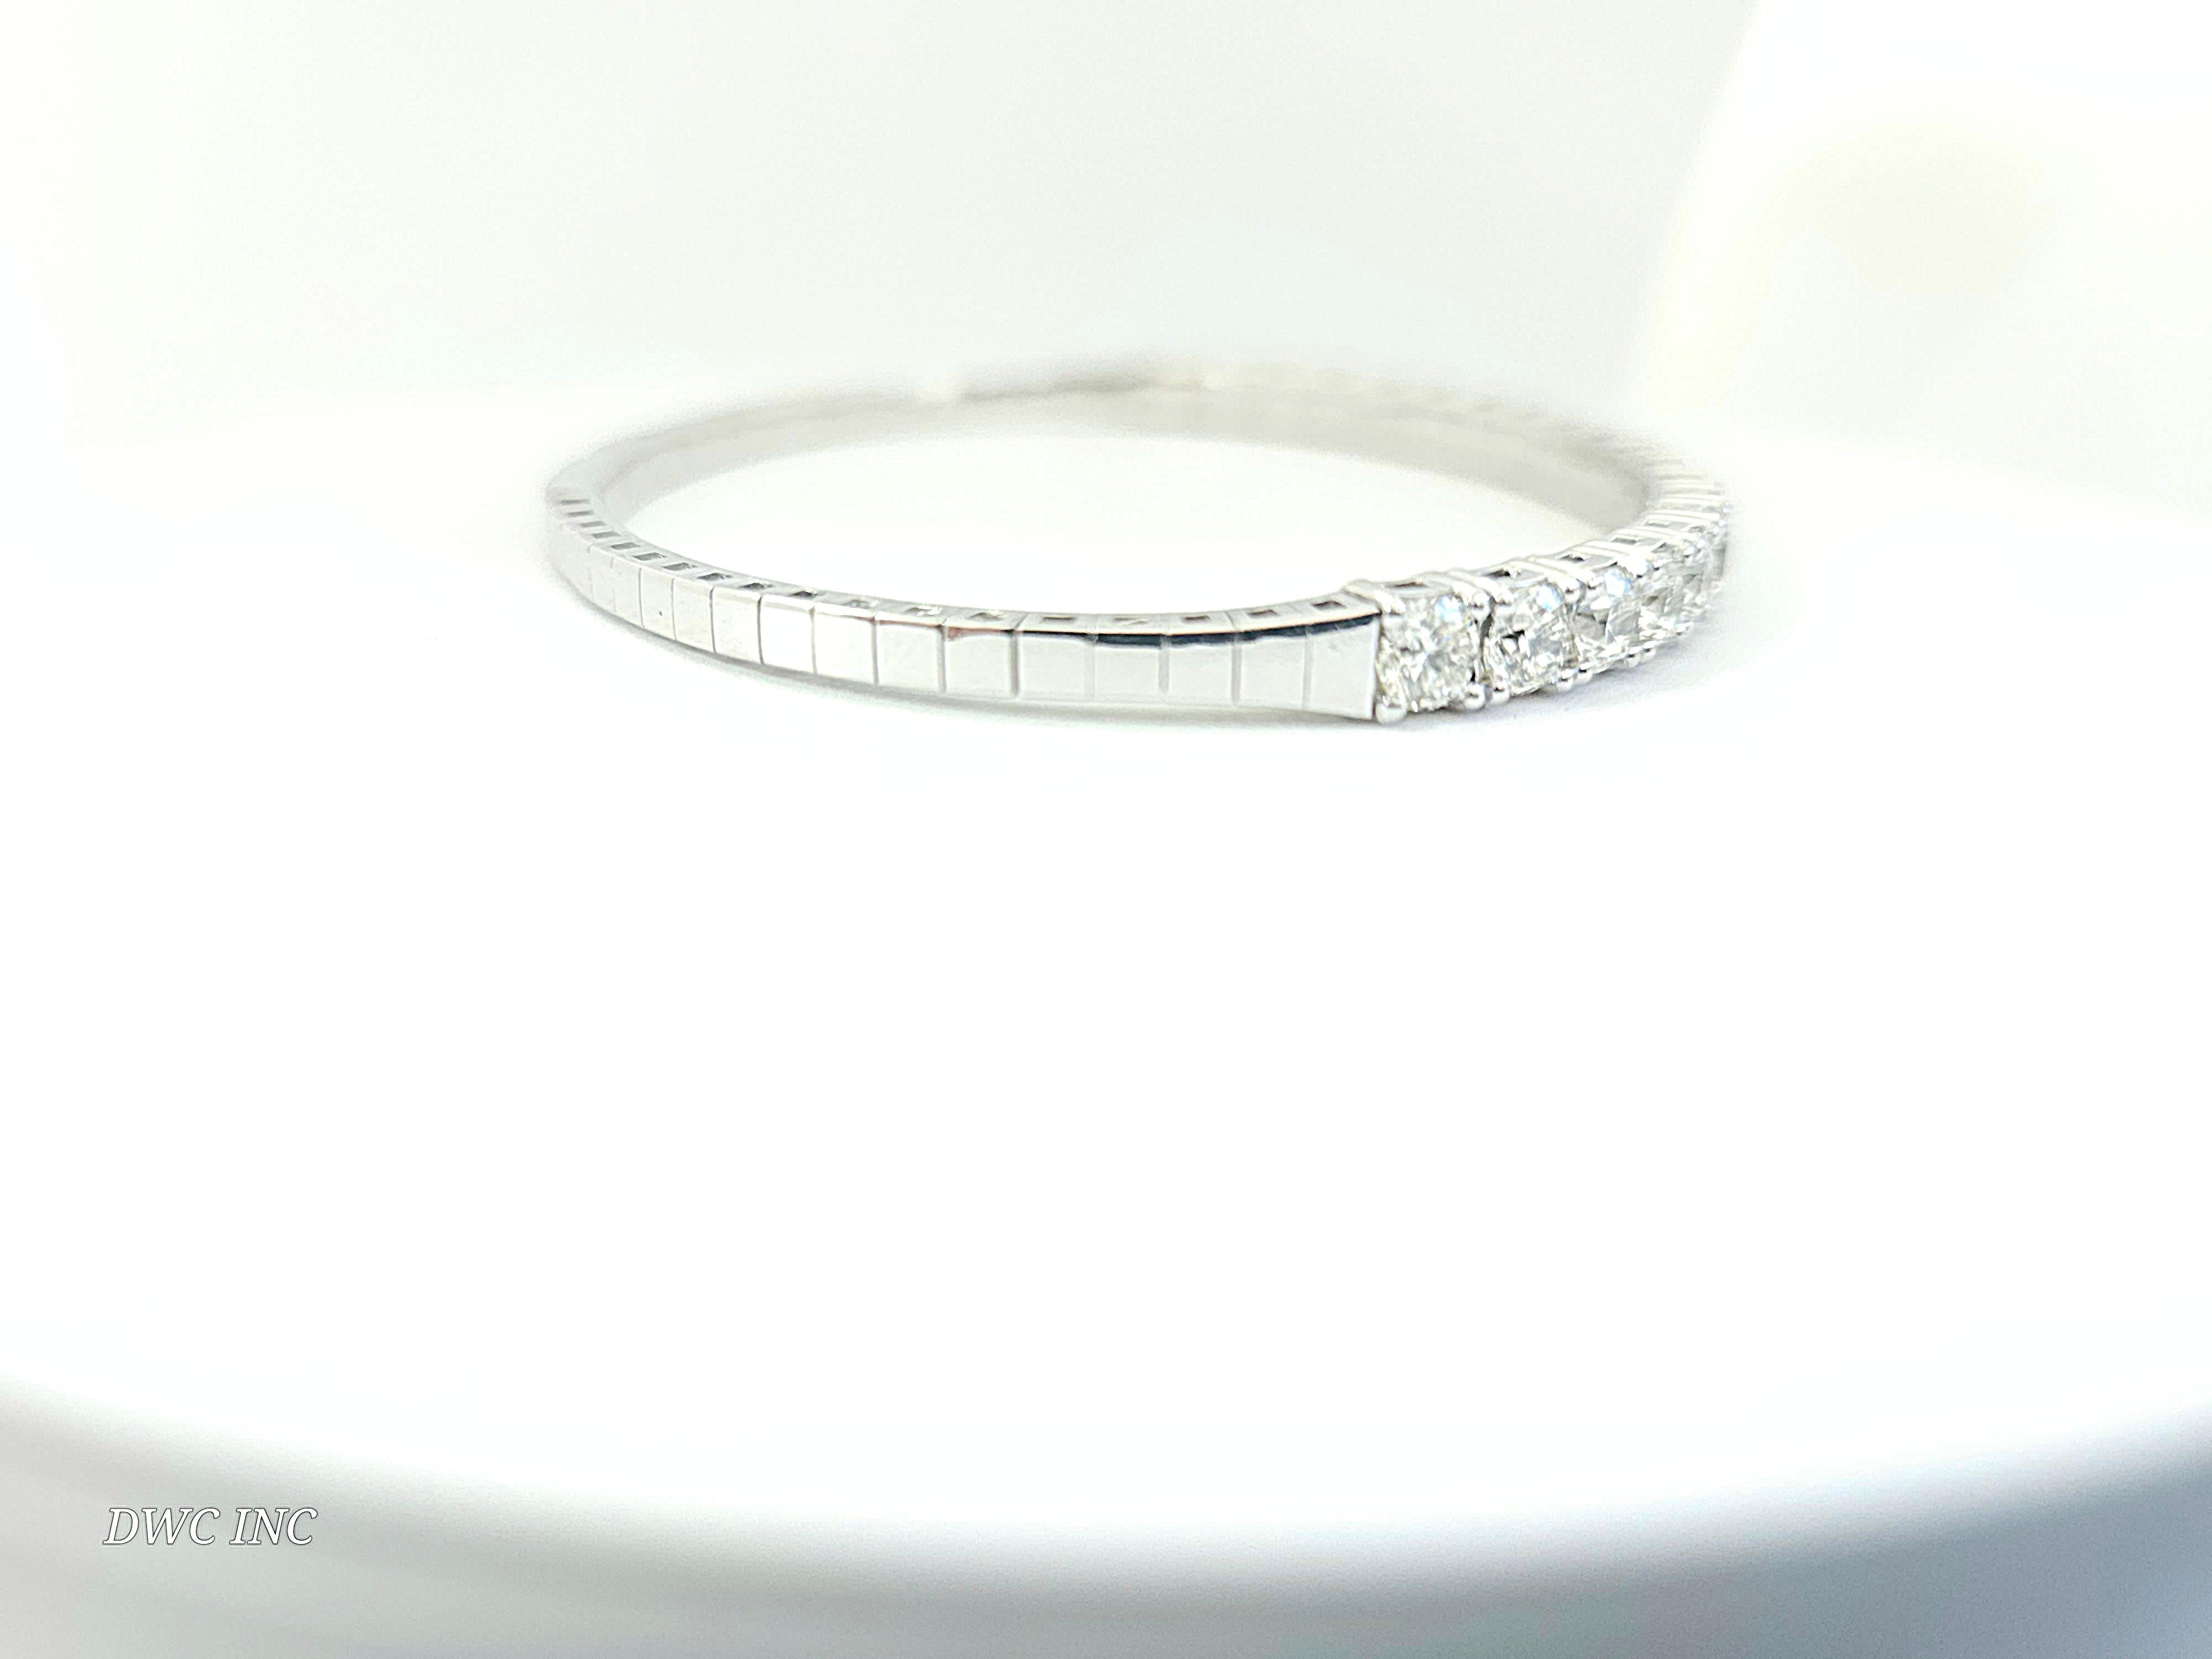 4.78 Carat Diamants naturels Mini Bangle bracelet coupe ronde-brillante  Or blanc 14k. 
7 pouces. 20pcs Moyenne H-VS1  4,5 mm de large. Très brillant 12.88 grammes.

*Expédition gratuite aux États-Unis